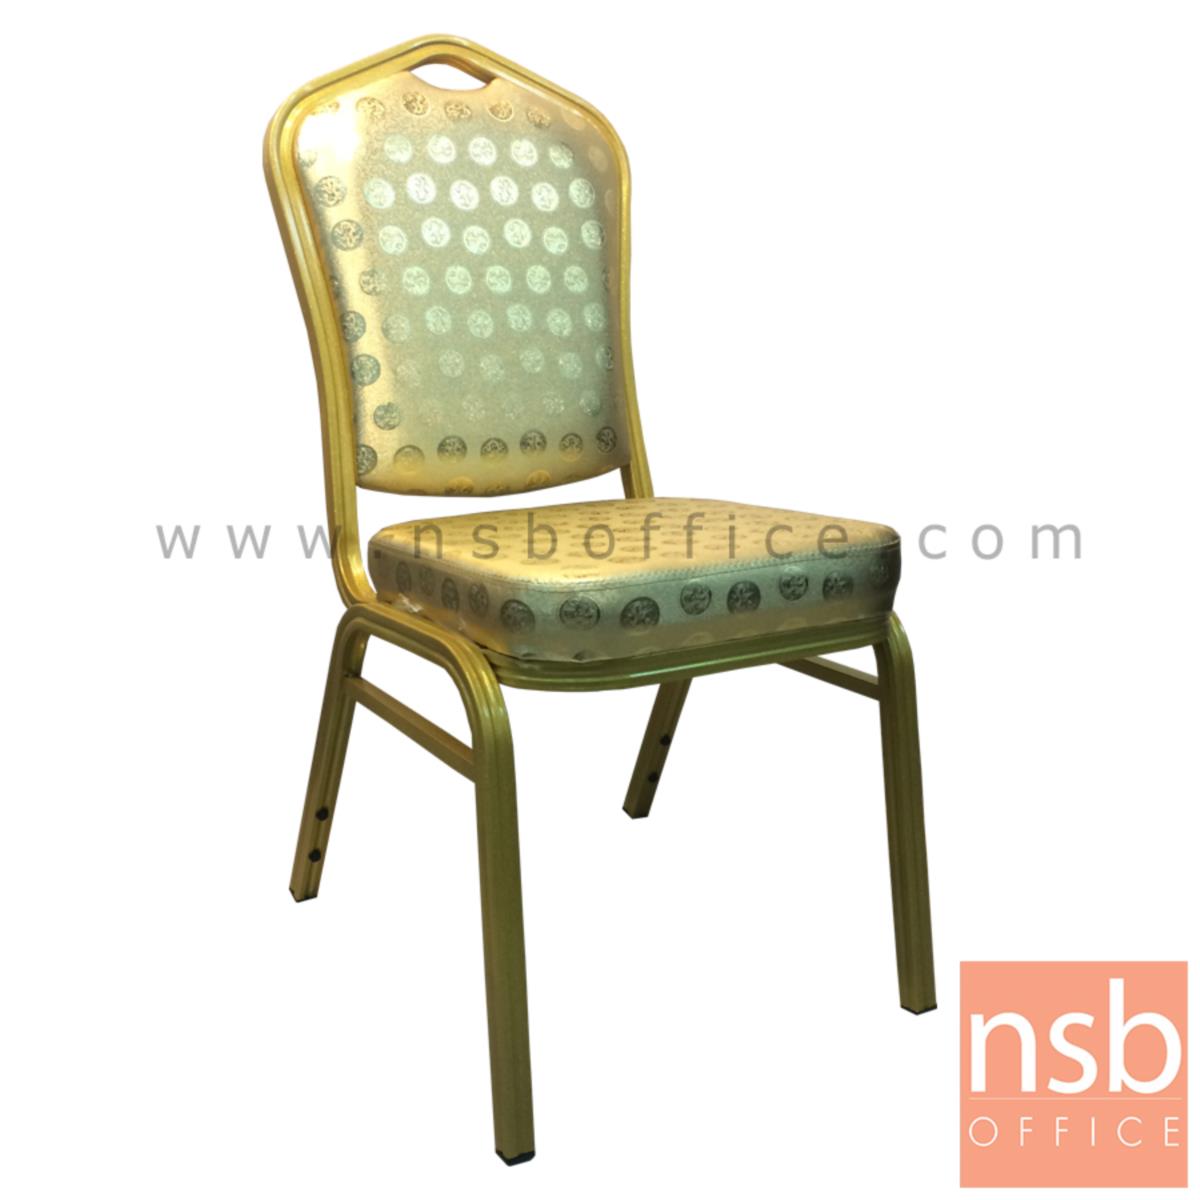 B05A141:เก้าอี้อเนกประสงค์จัดเลี้ยงทรงหลุยส์  ขนาด 95H cm.  ขาเหล็กพ่นสีทอง